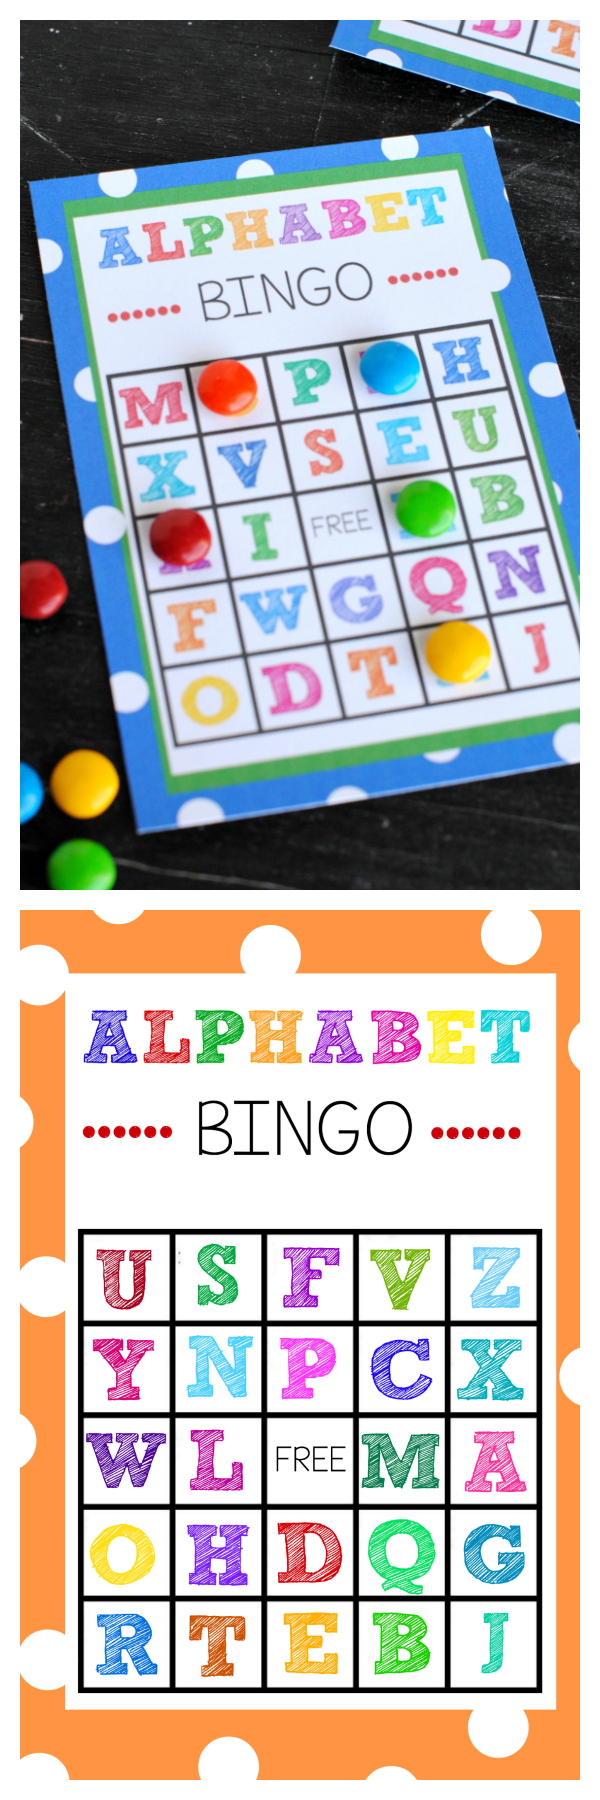 Free Printable Alphabet Bingo Game - Free Printable Alphabet Games